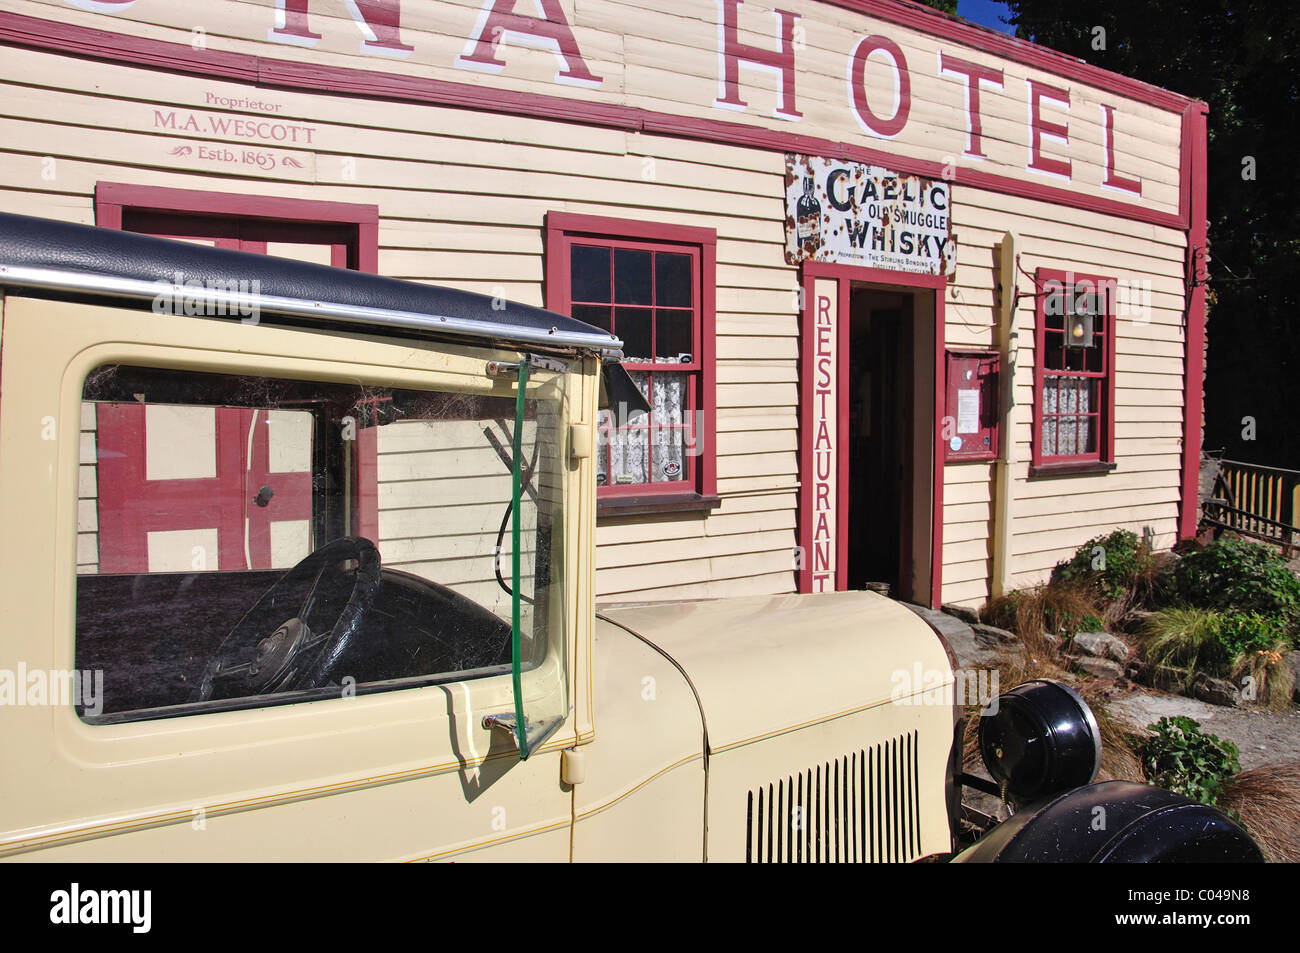 Historic Cardrona Hotel, Cardrona, Otago Region, South Island, New Zealand Stock Photo